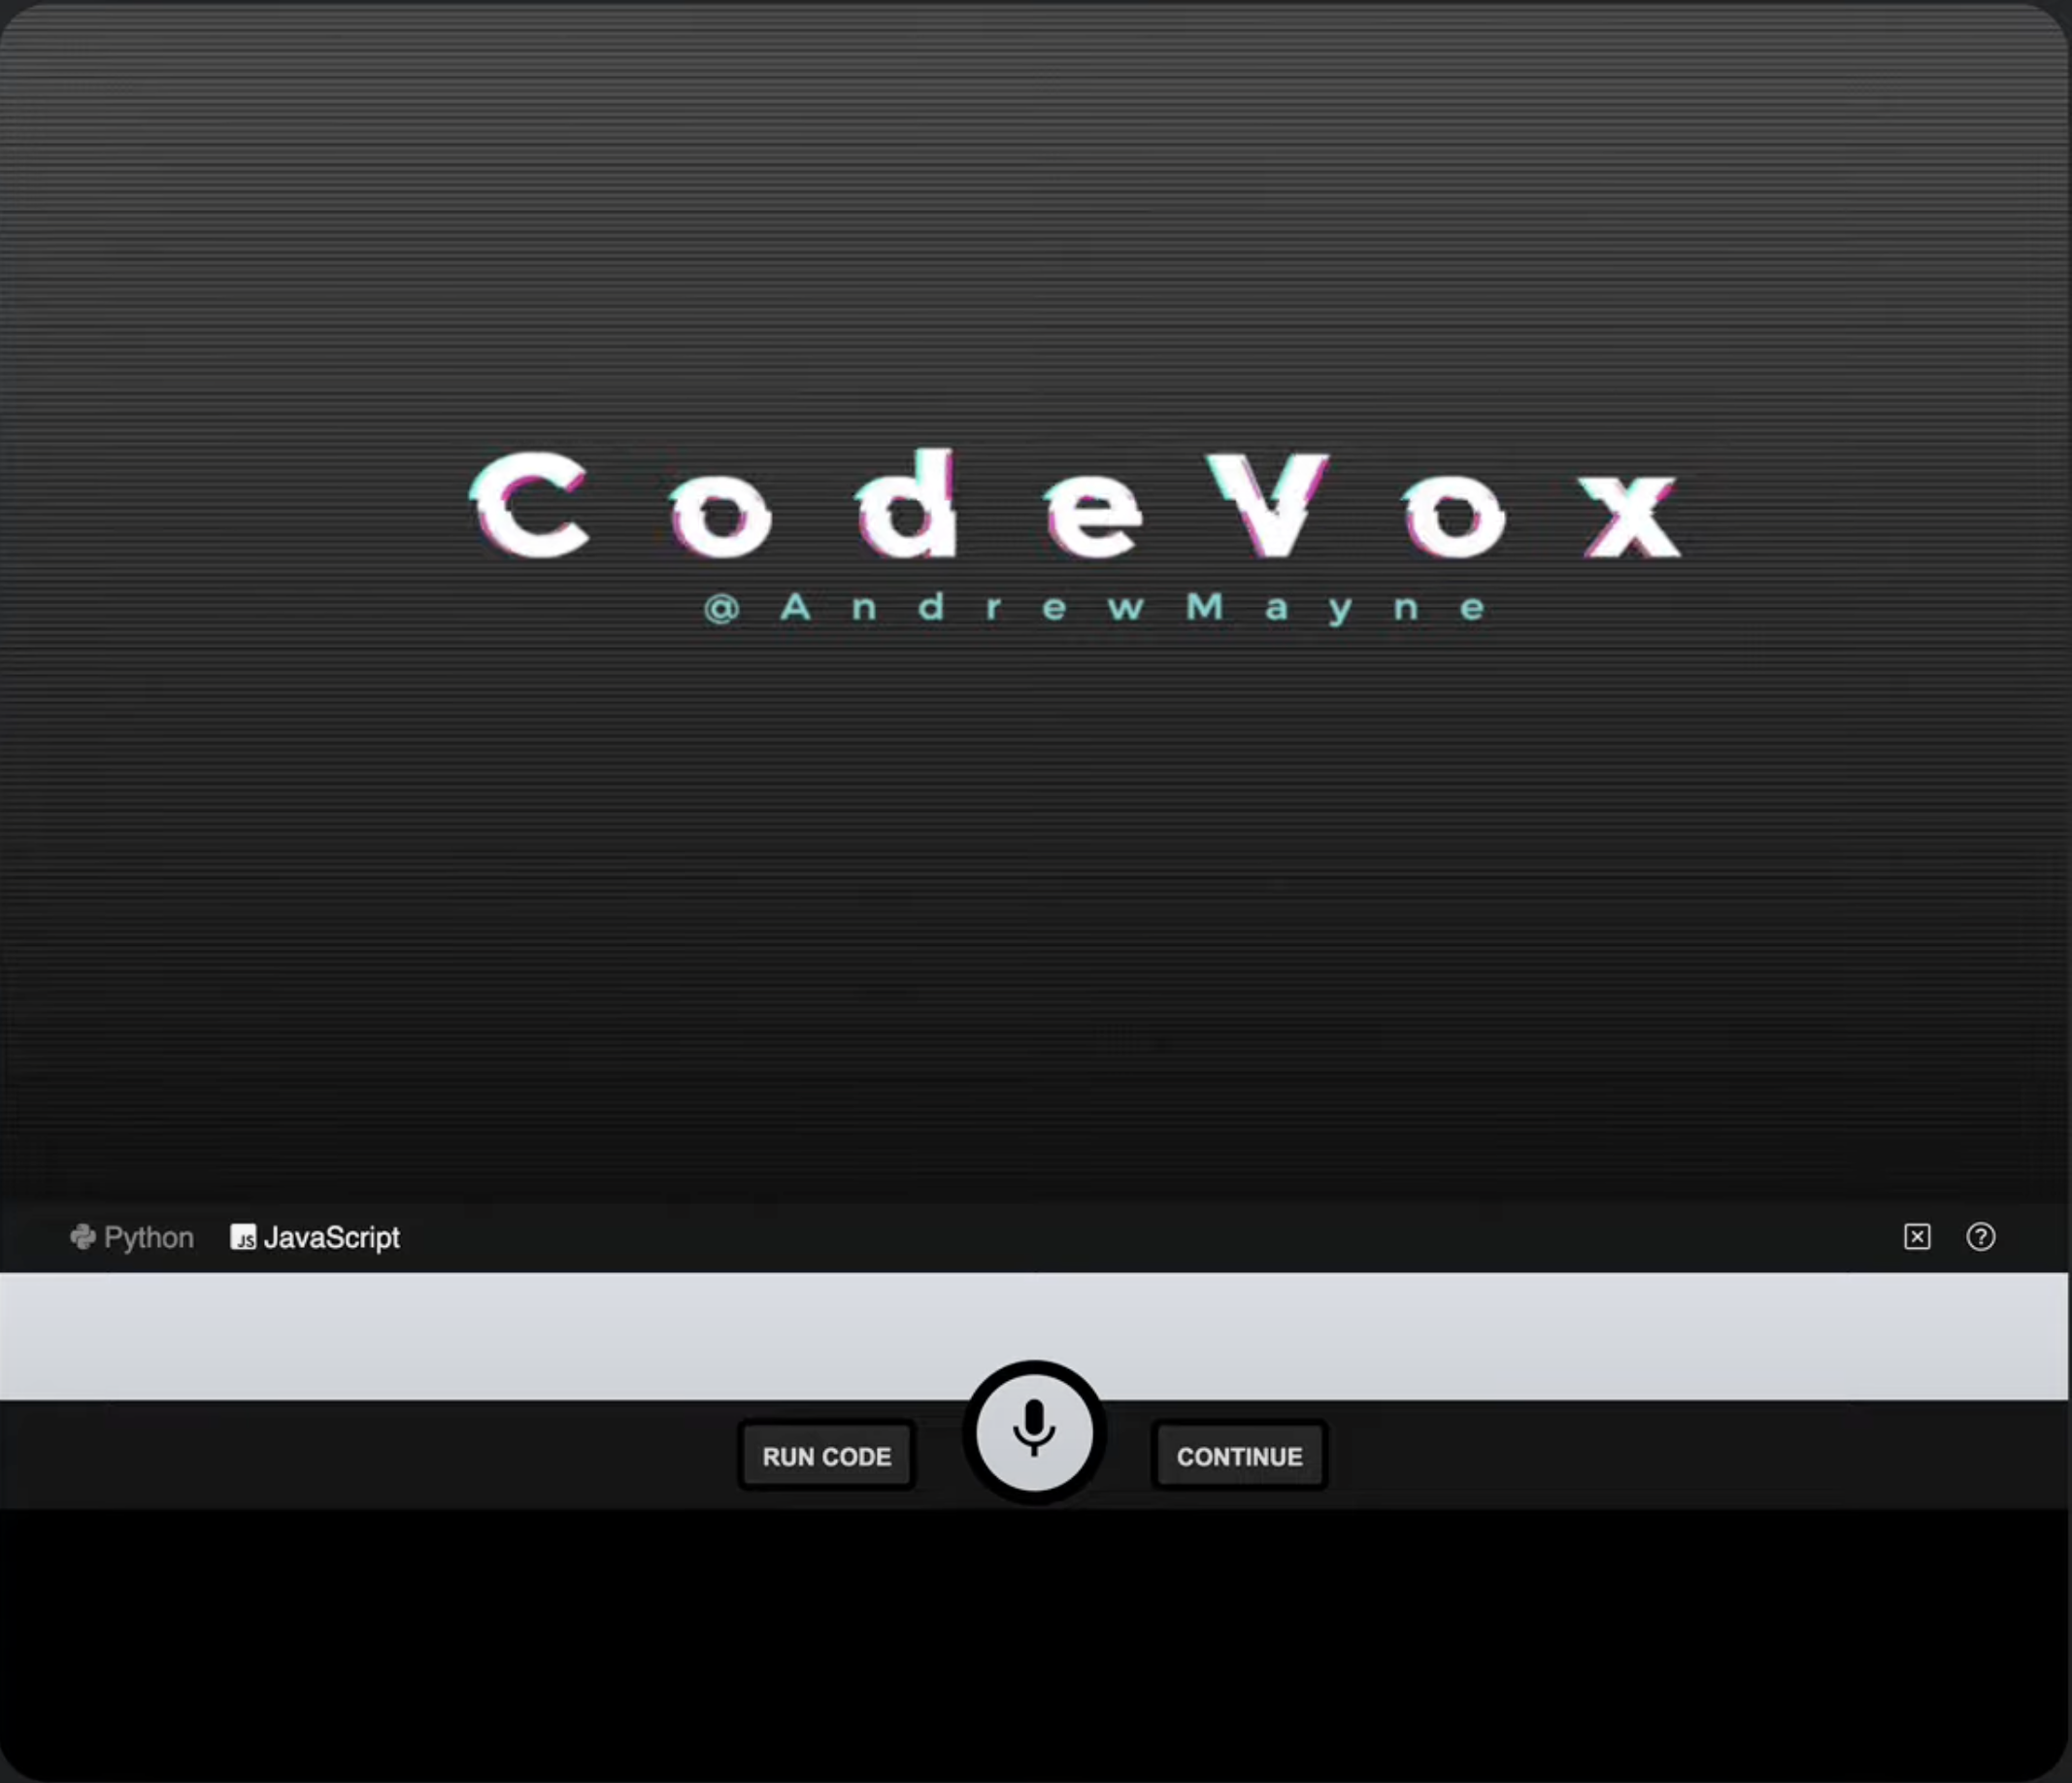 CodeVox